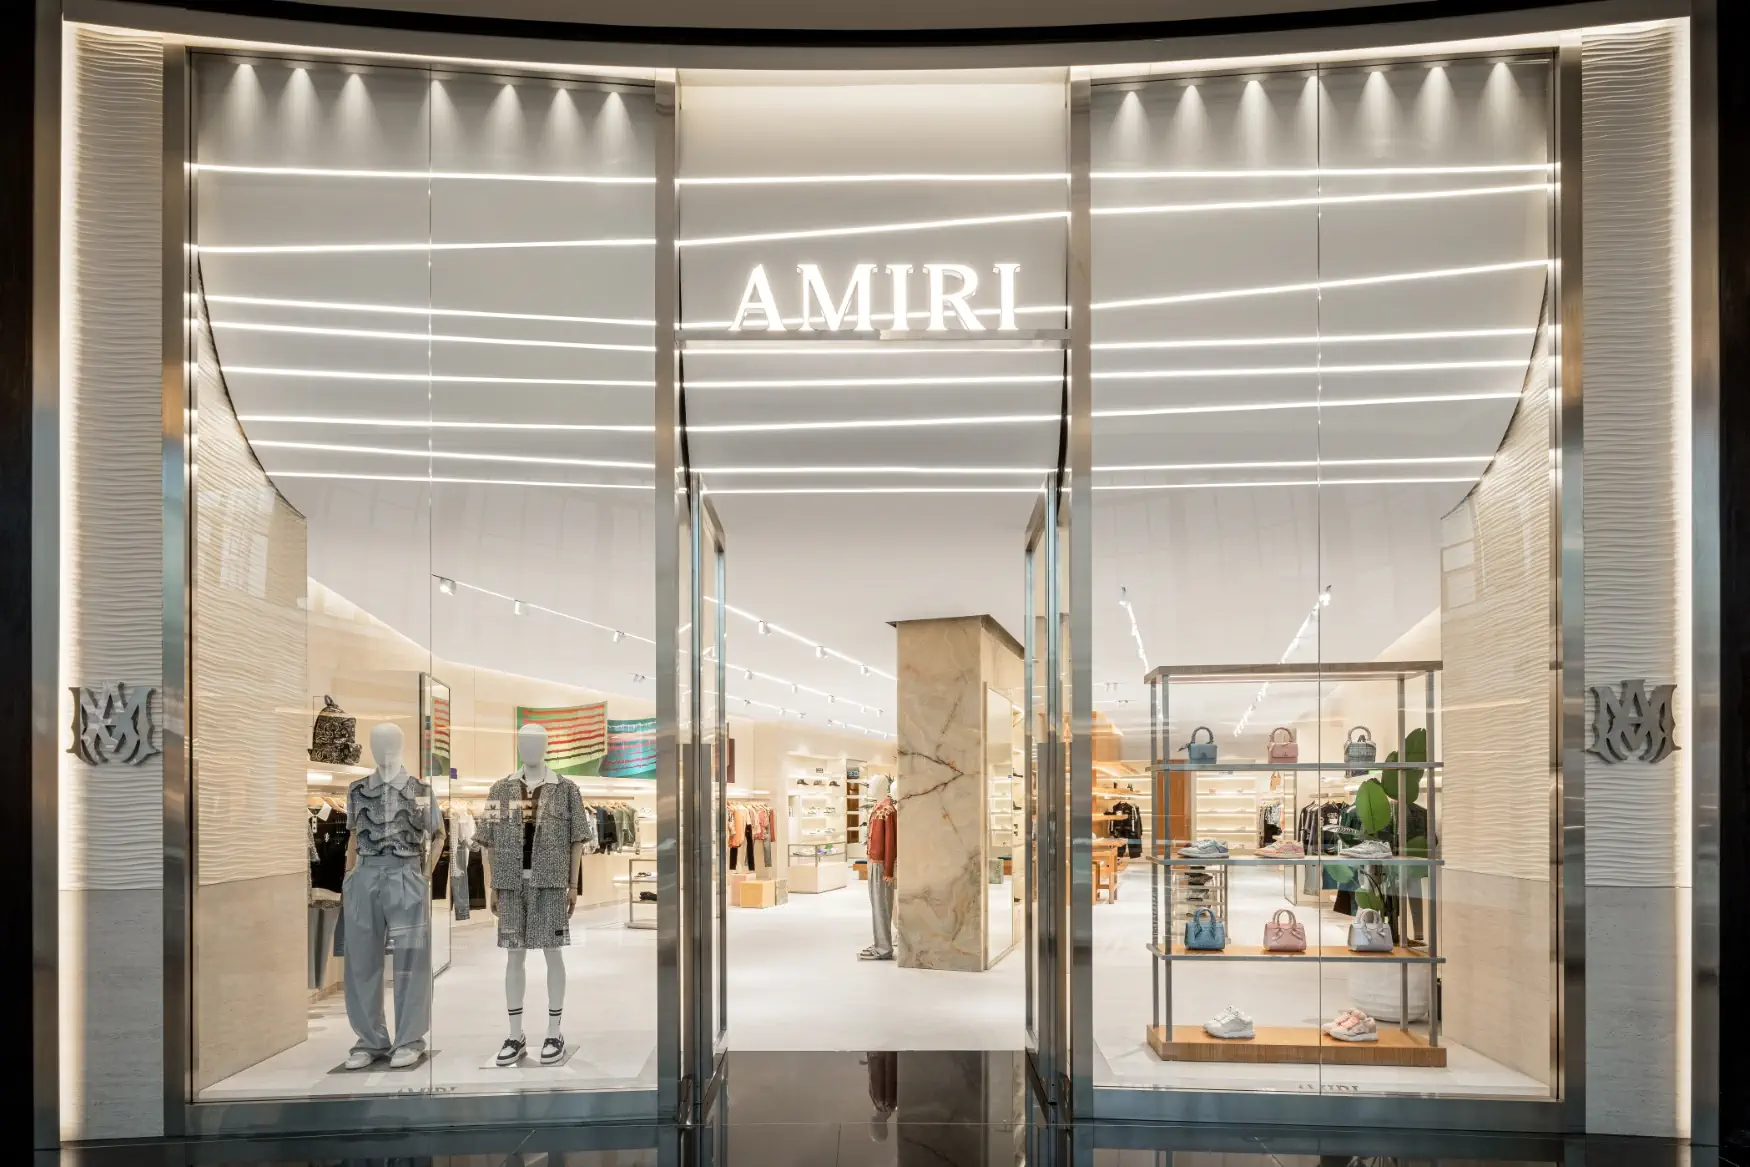 AMIRI double sa présence à Dubaï avec une oasis californienne dans le Mall of Emirates